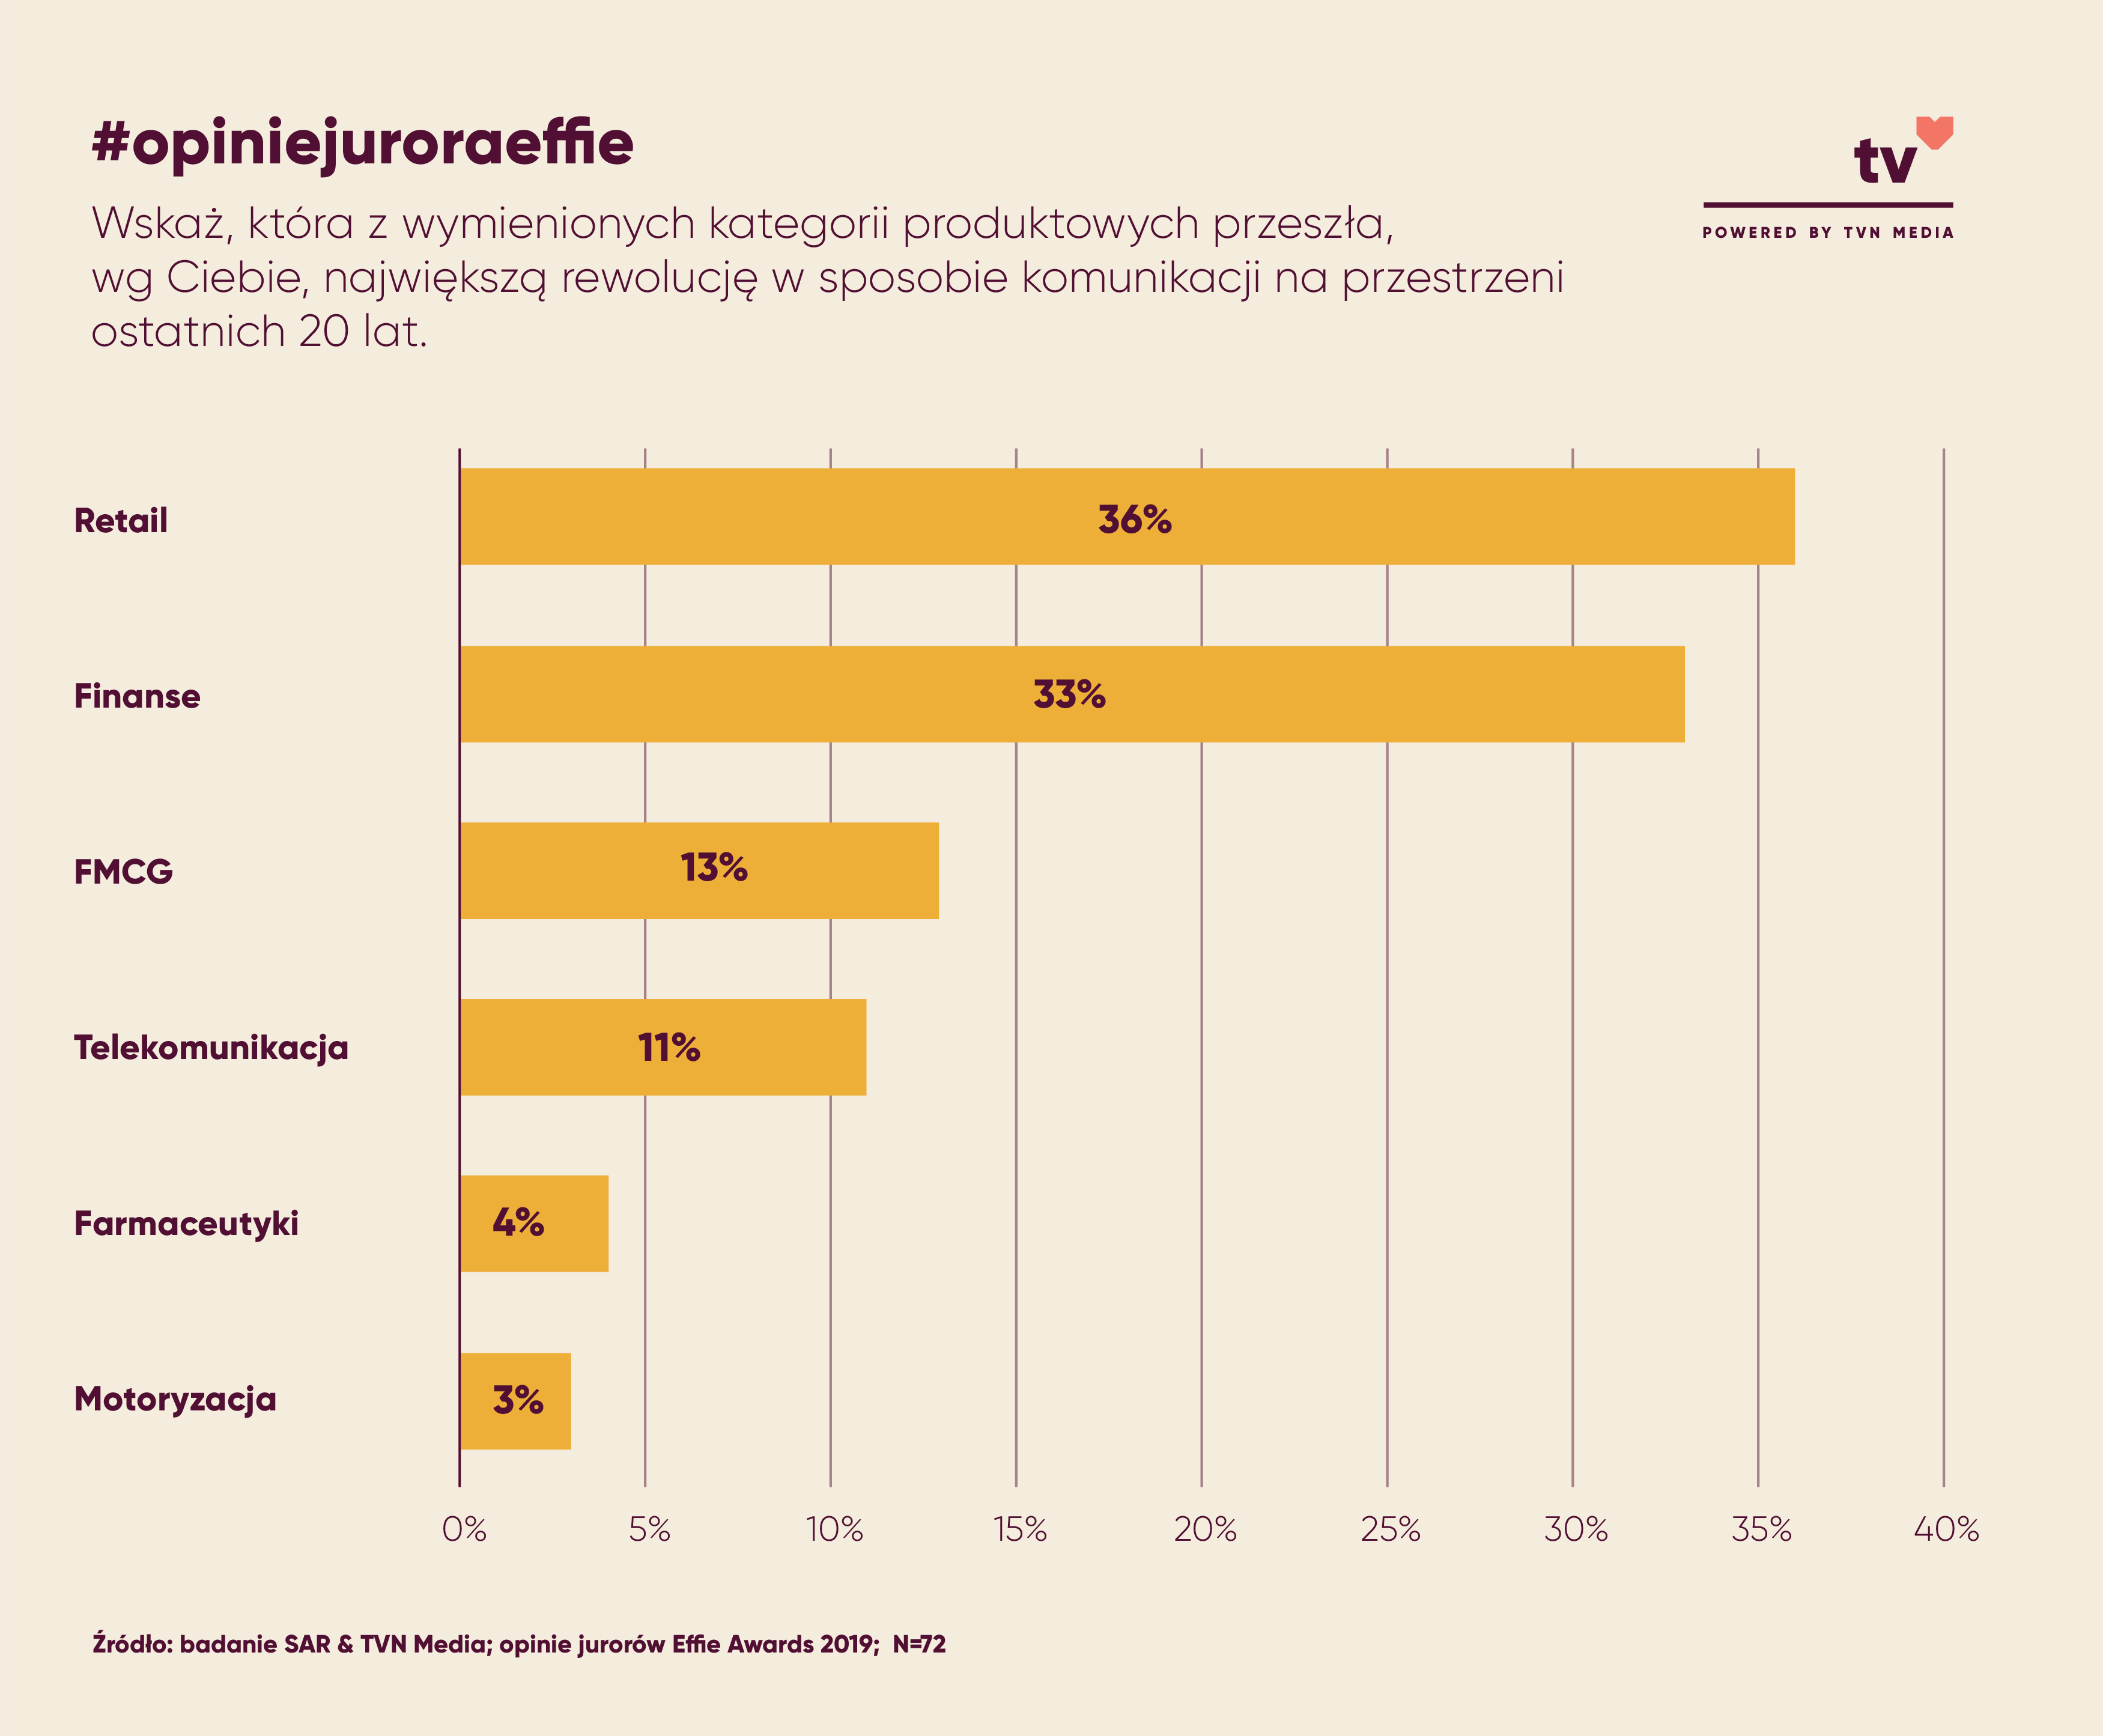 Kategorie produktowe, które wg jurorów Effie przeszły największą rewolucję w sposobie komunikacji na przestrzeni ostatnich 20 lat w Polsce.